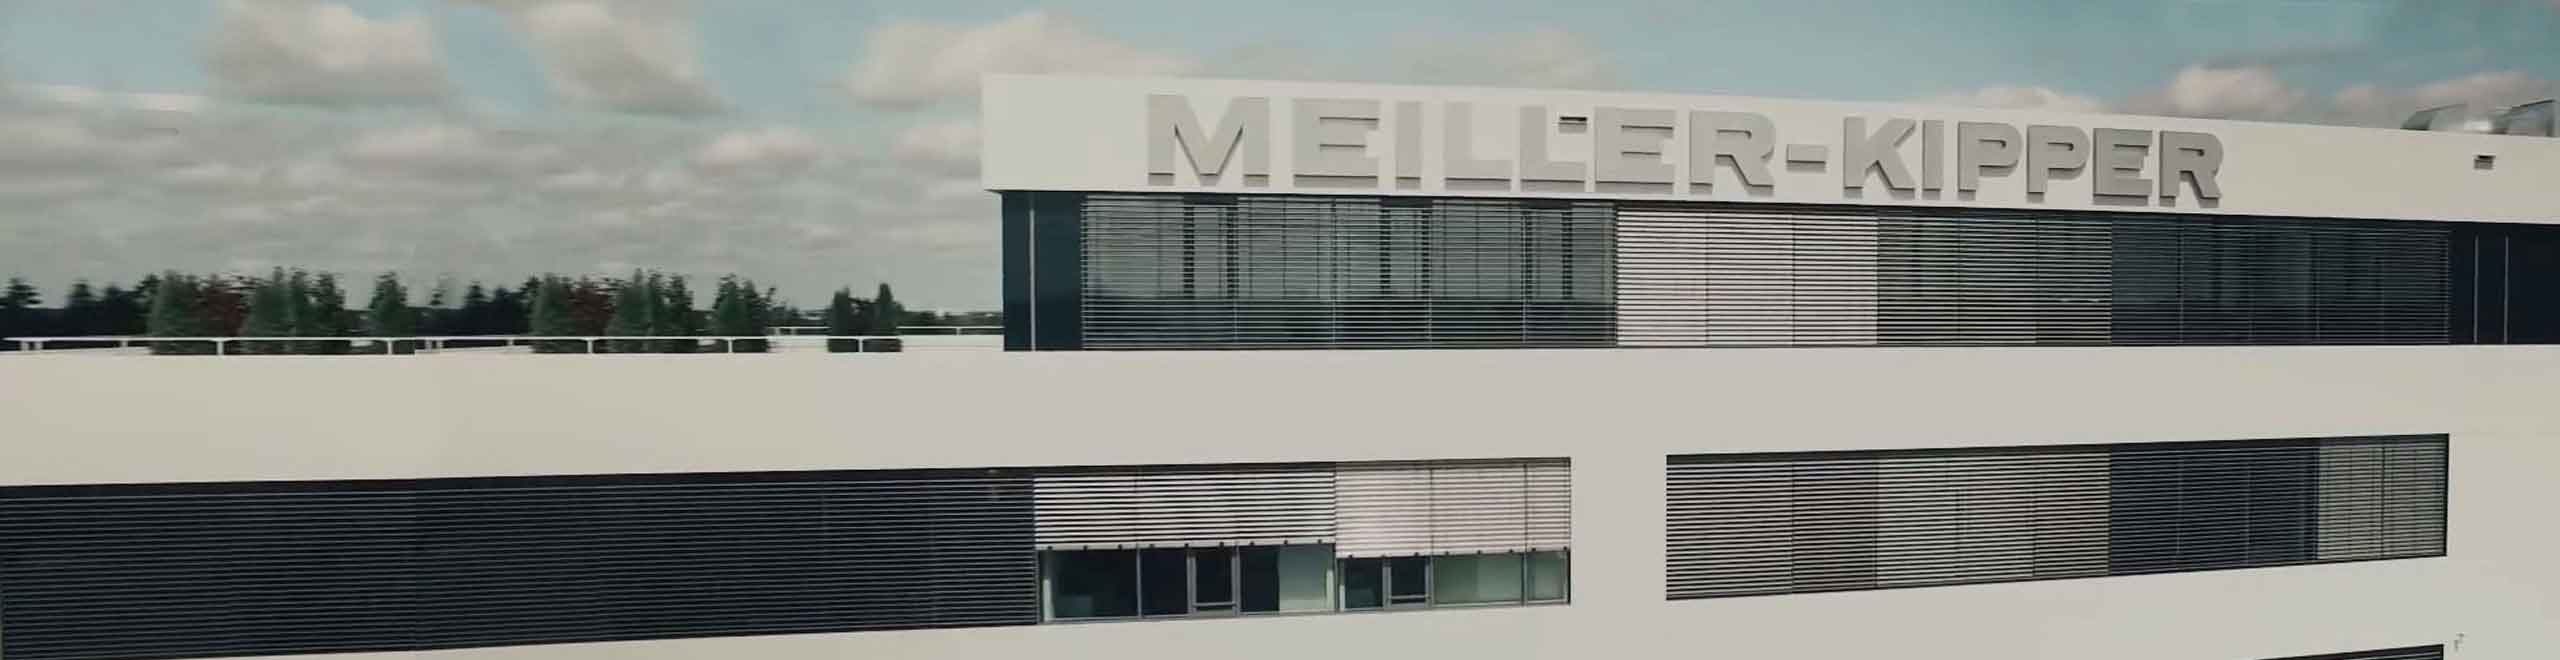 Hlavní budova MEILLER